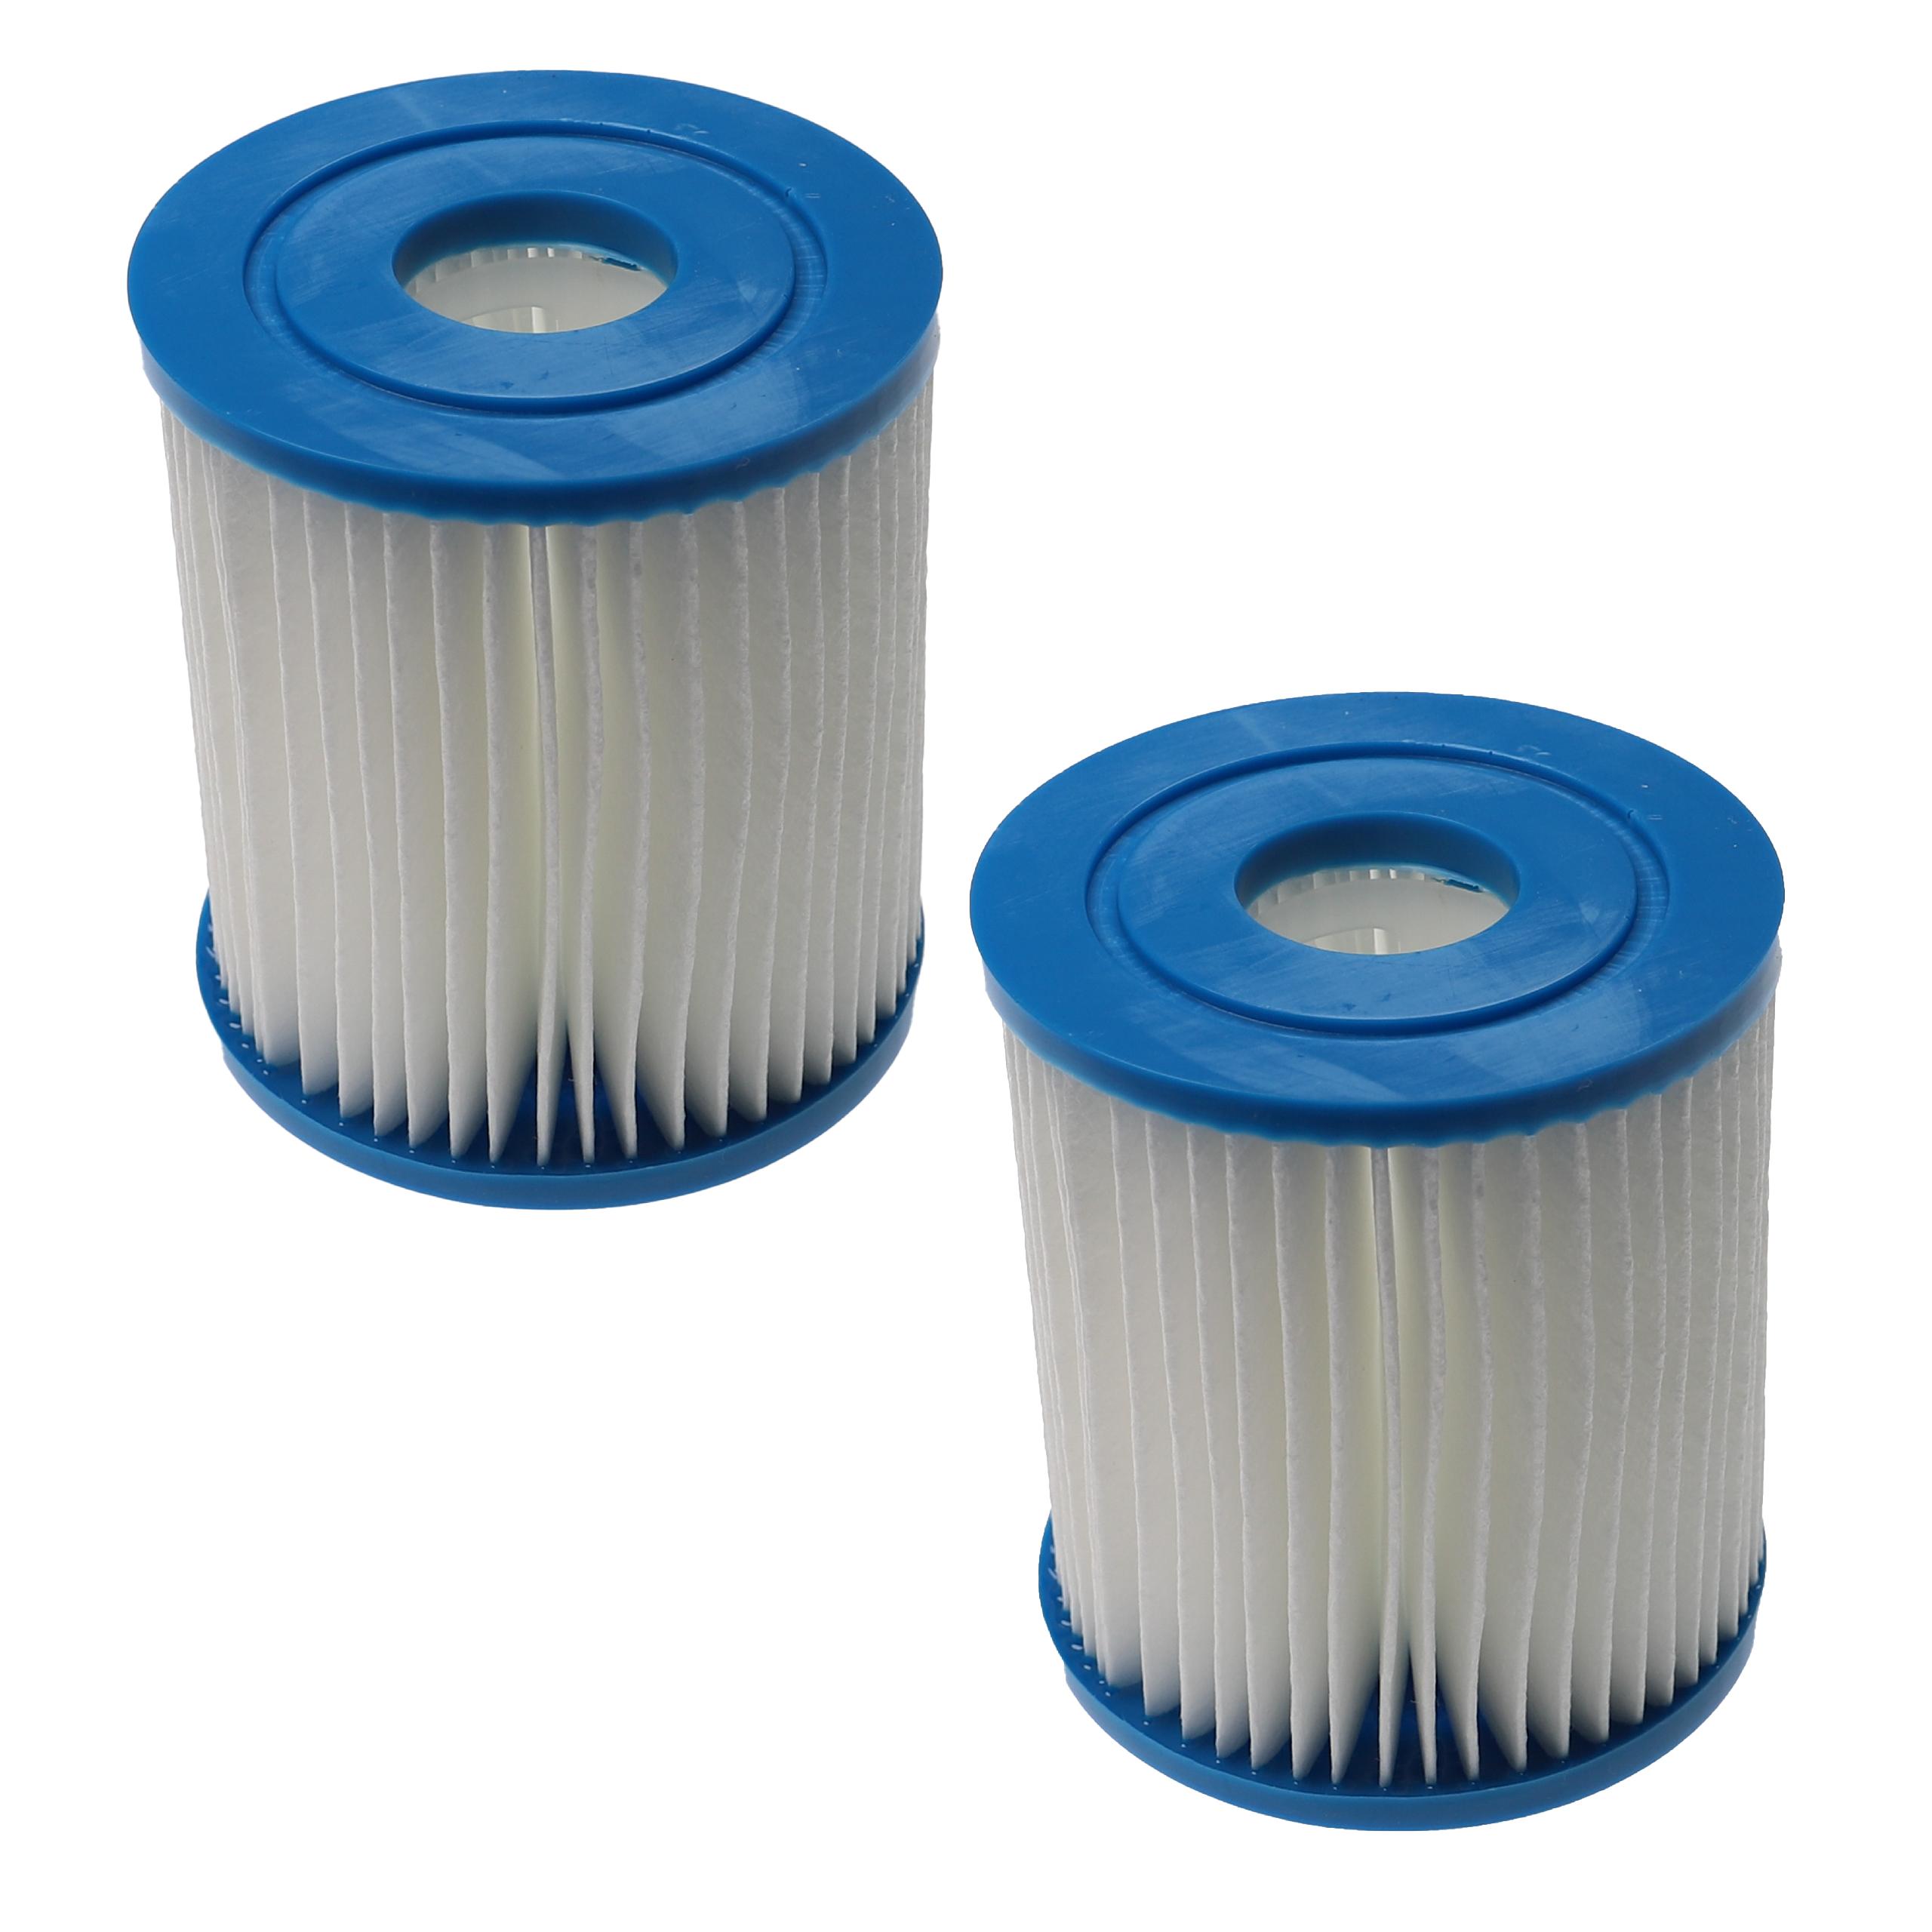 2x filtro de agua reemplaza APC C7490 para piscina y bomba de filtro Intex - Cartucho de filtro